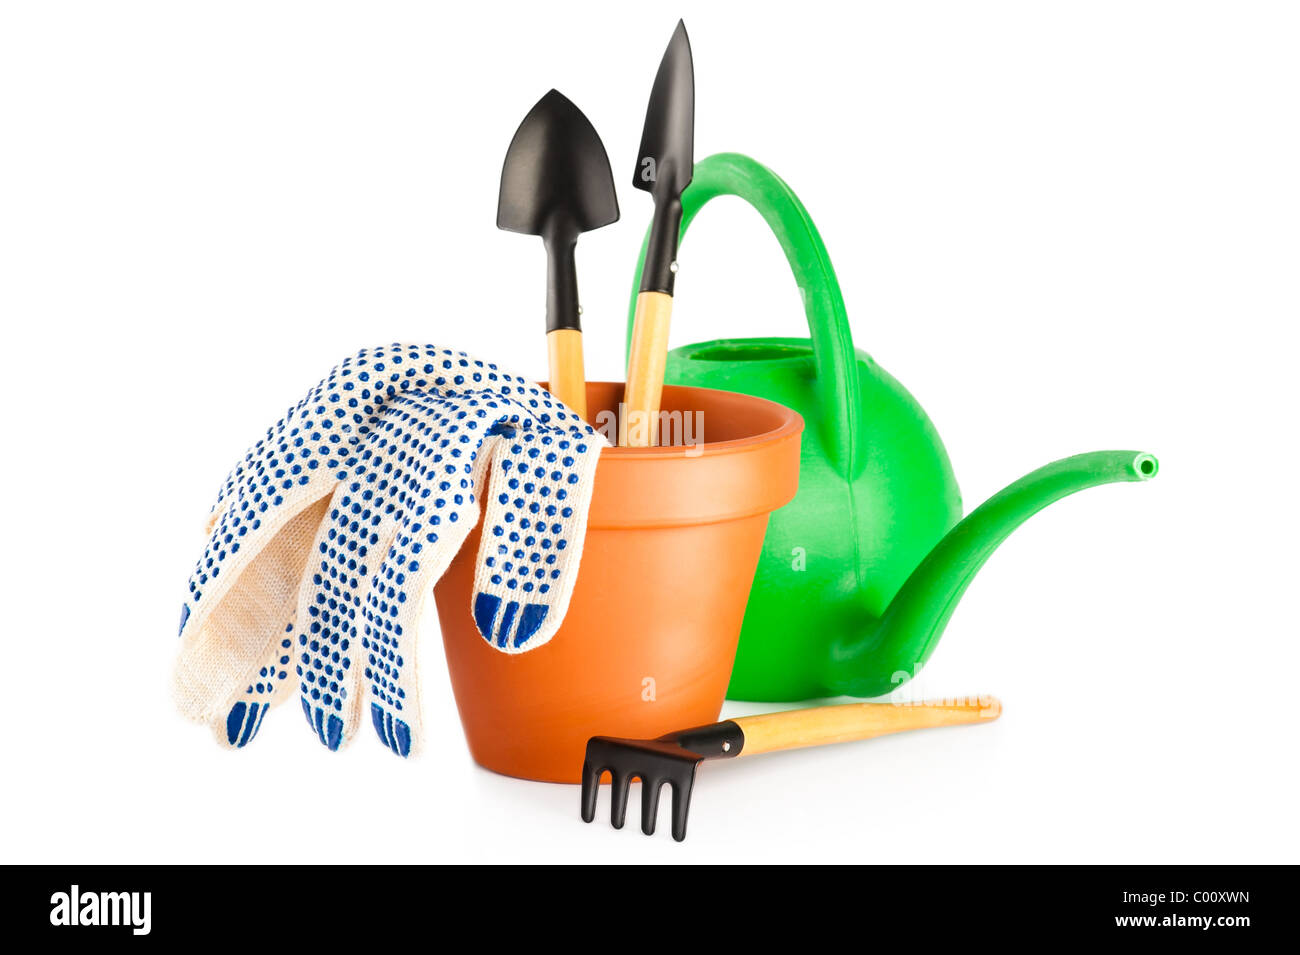 Maceta de terracota y herramientas de jardinería sobre fondo blanco. Foto de stock